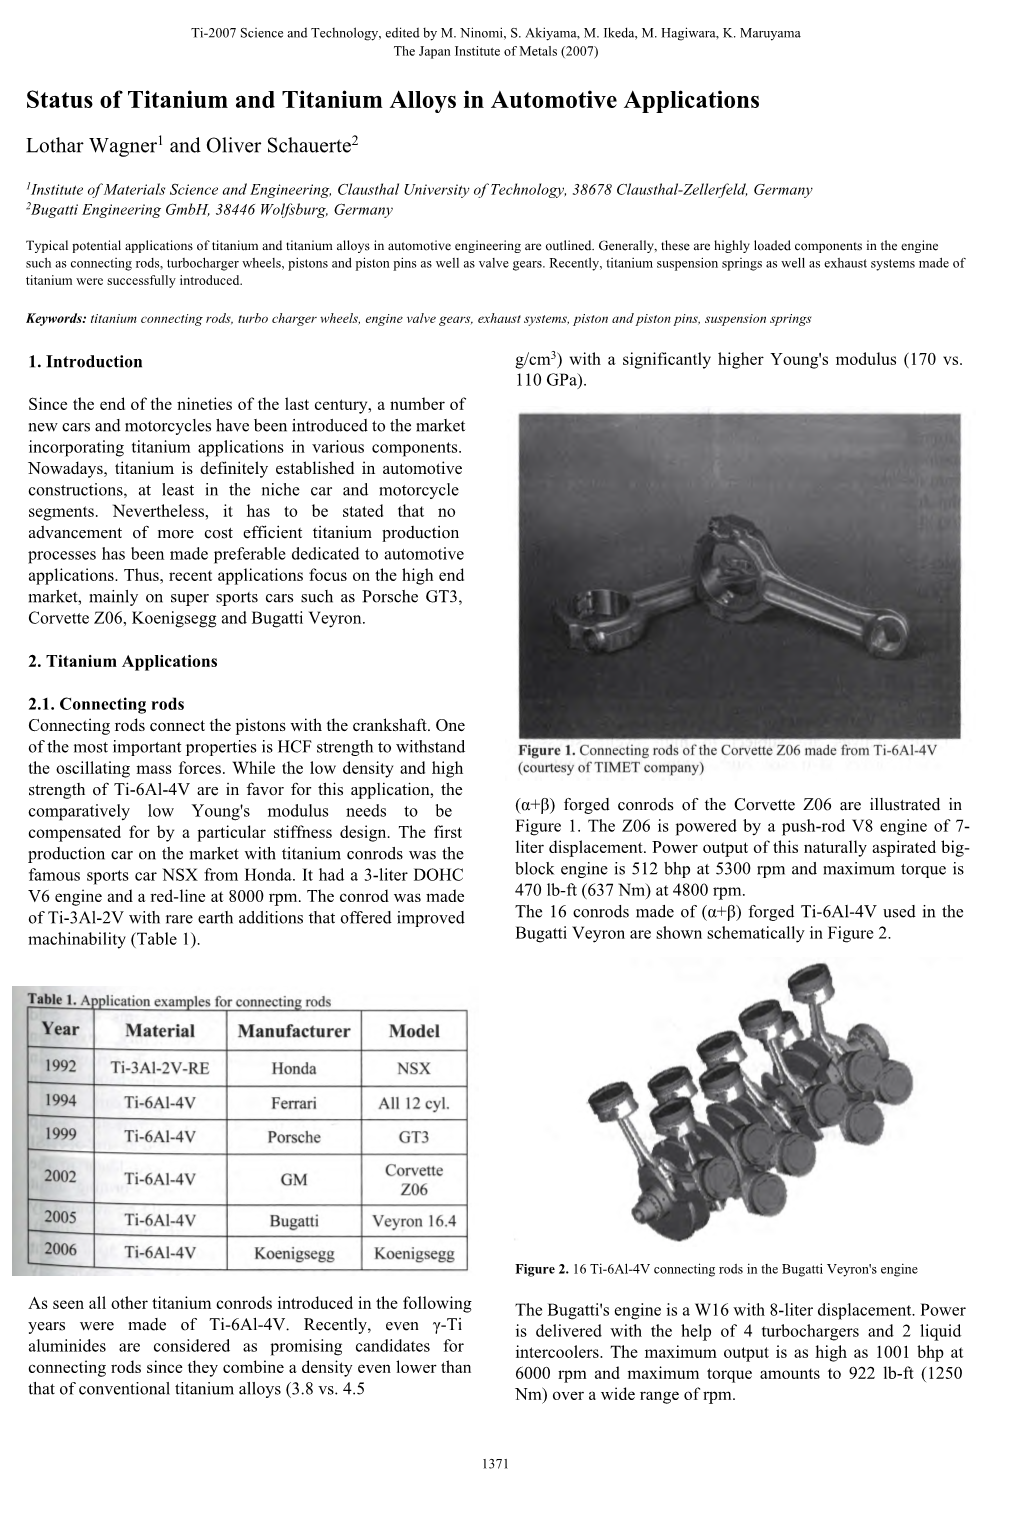 Status of Titanium and Titanium Alloys in Automotive Applications